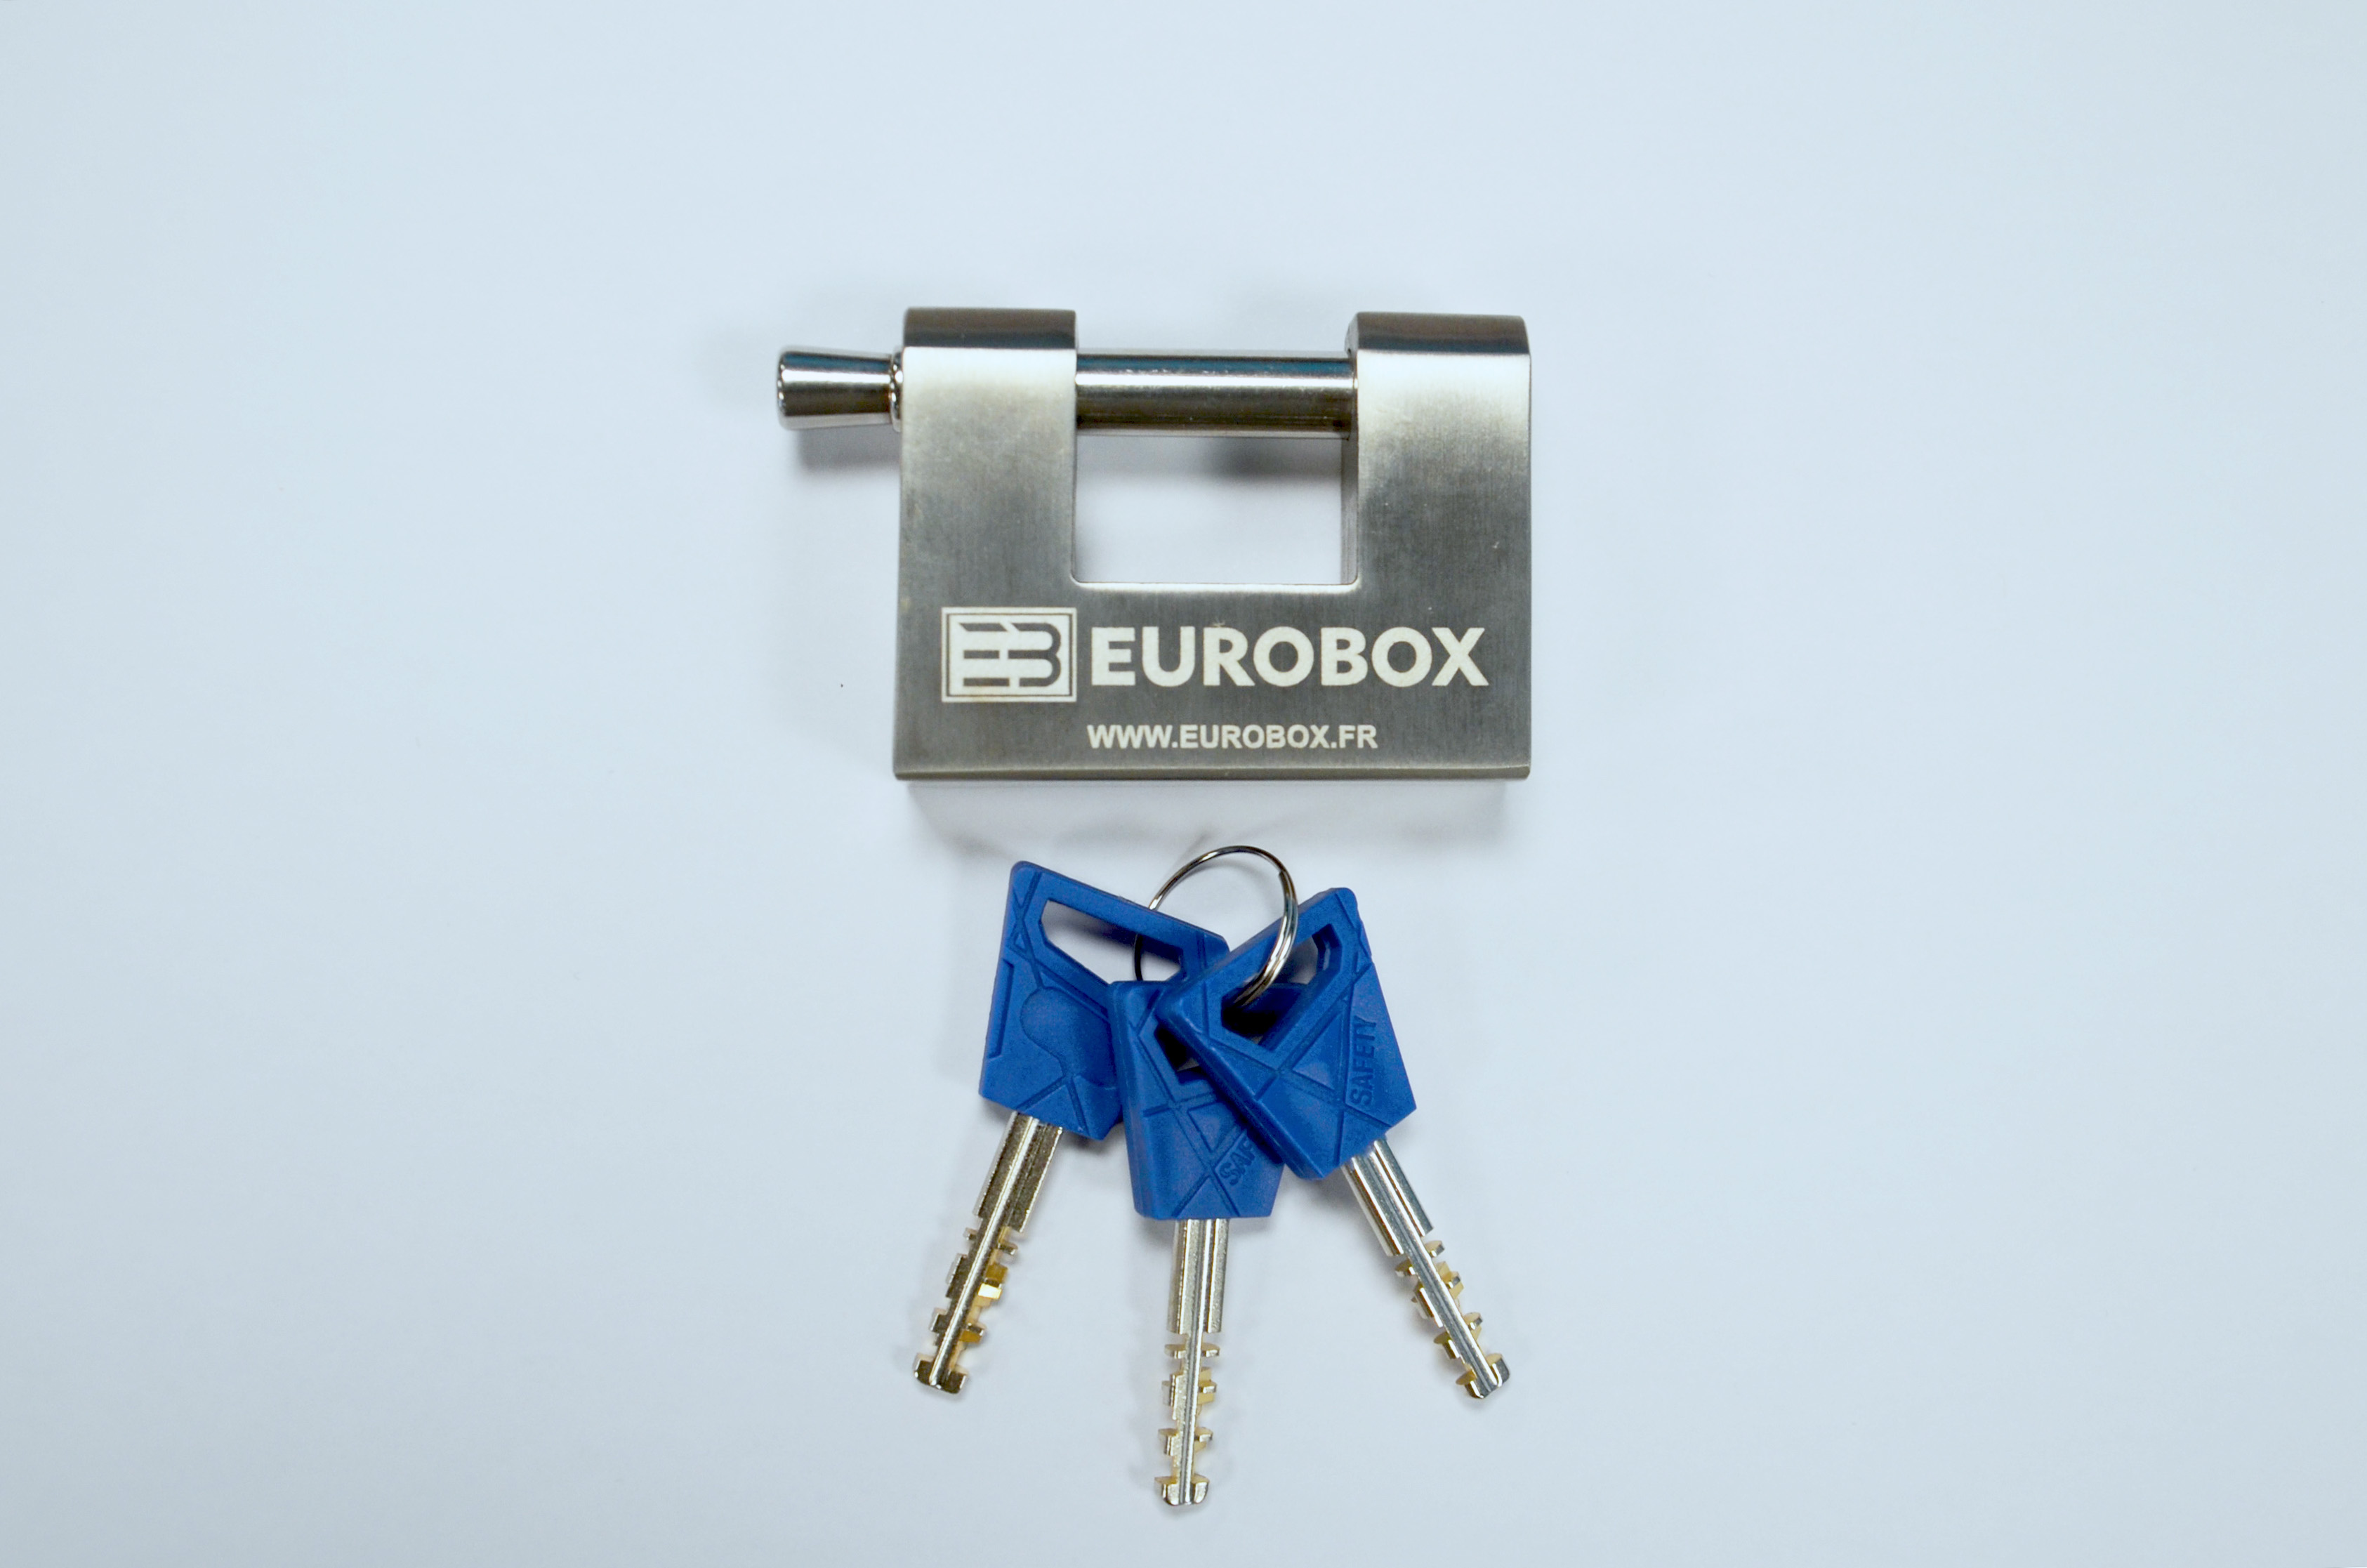 Système de verrouillage container, cadenas Eurobox en acier trempé, laiton et inox, jeux e trois clés